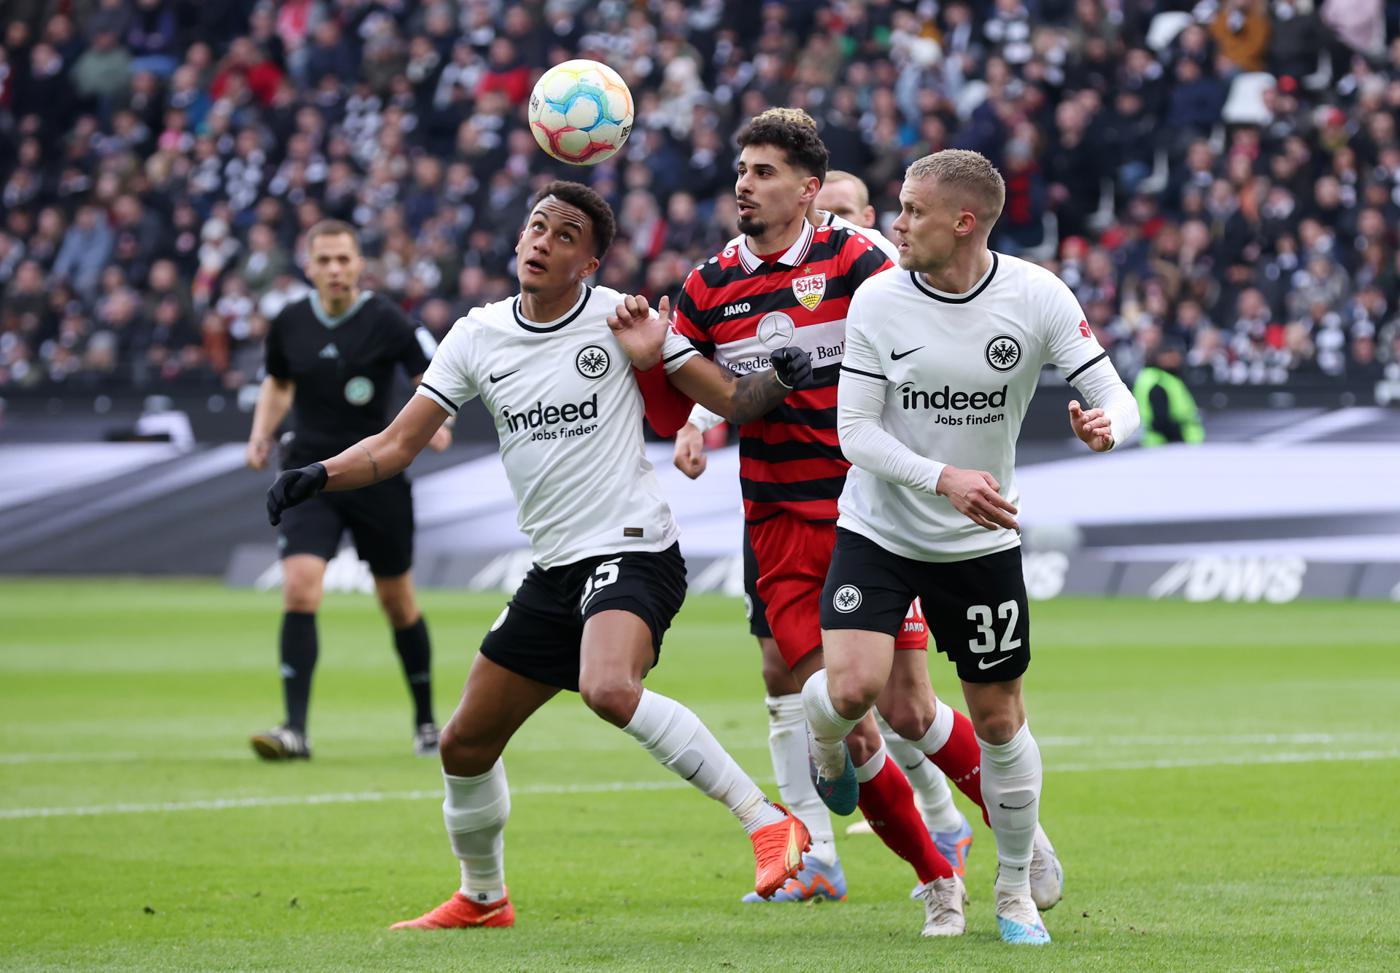 Eintracht vs Stuttgart - 1:1. German Championship, round 24. Match Review, Statistics